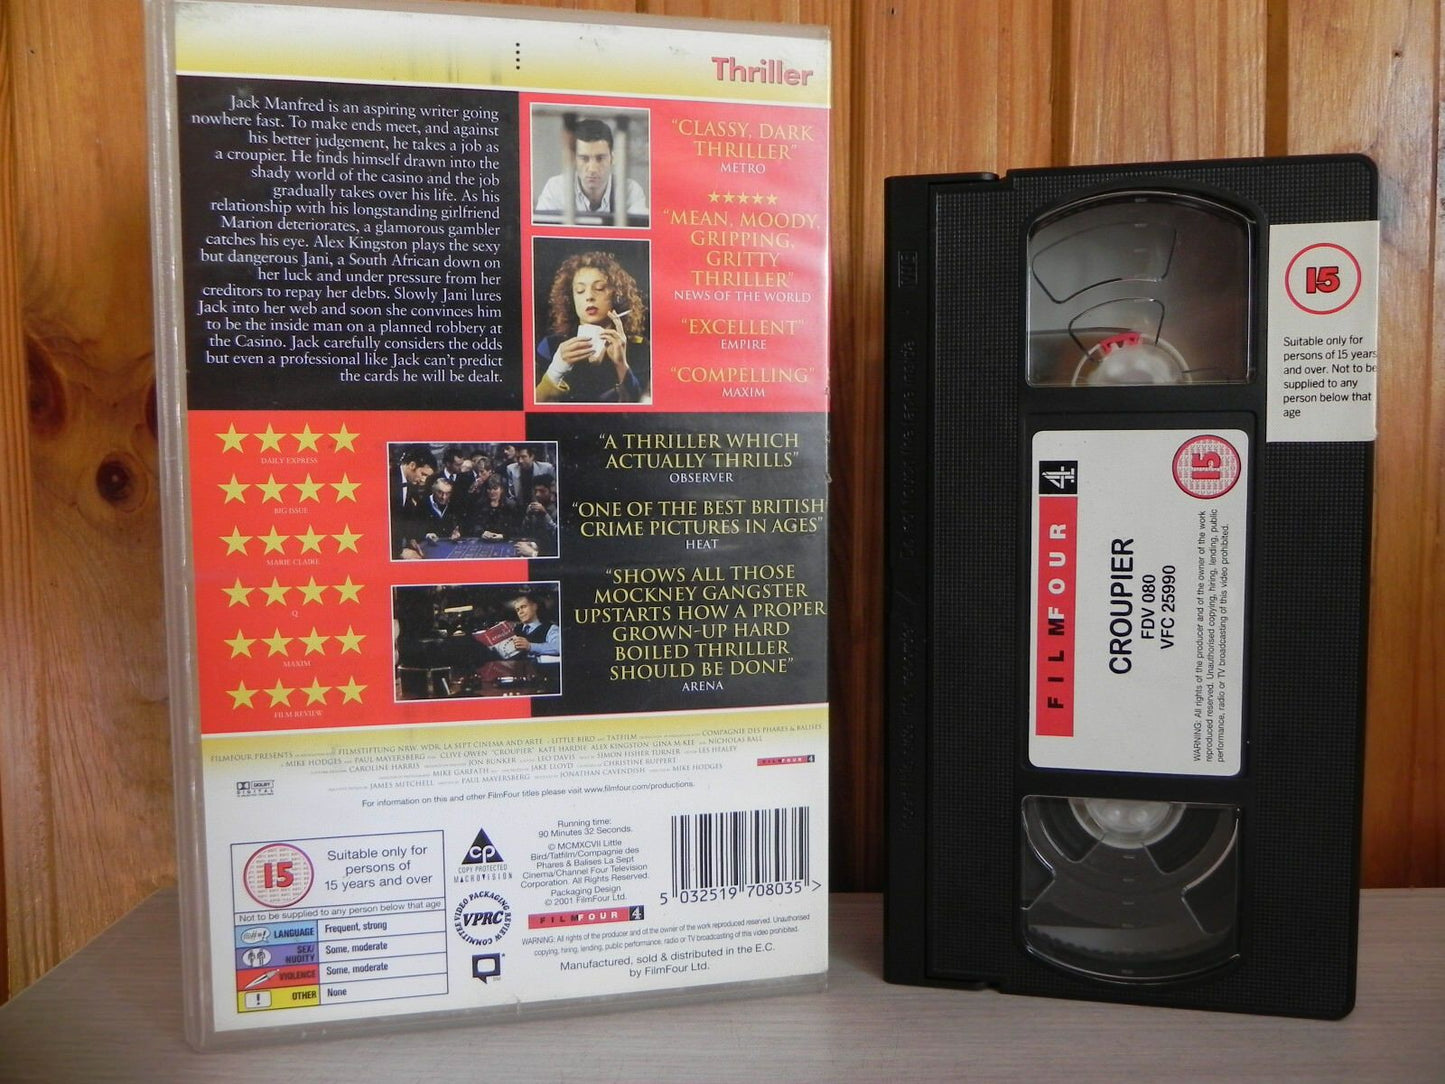 Croupier - Clive Owen - Big Box Release - Brilliant Thriller - 5 Star Film 4 VHS-